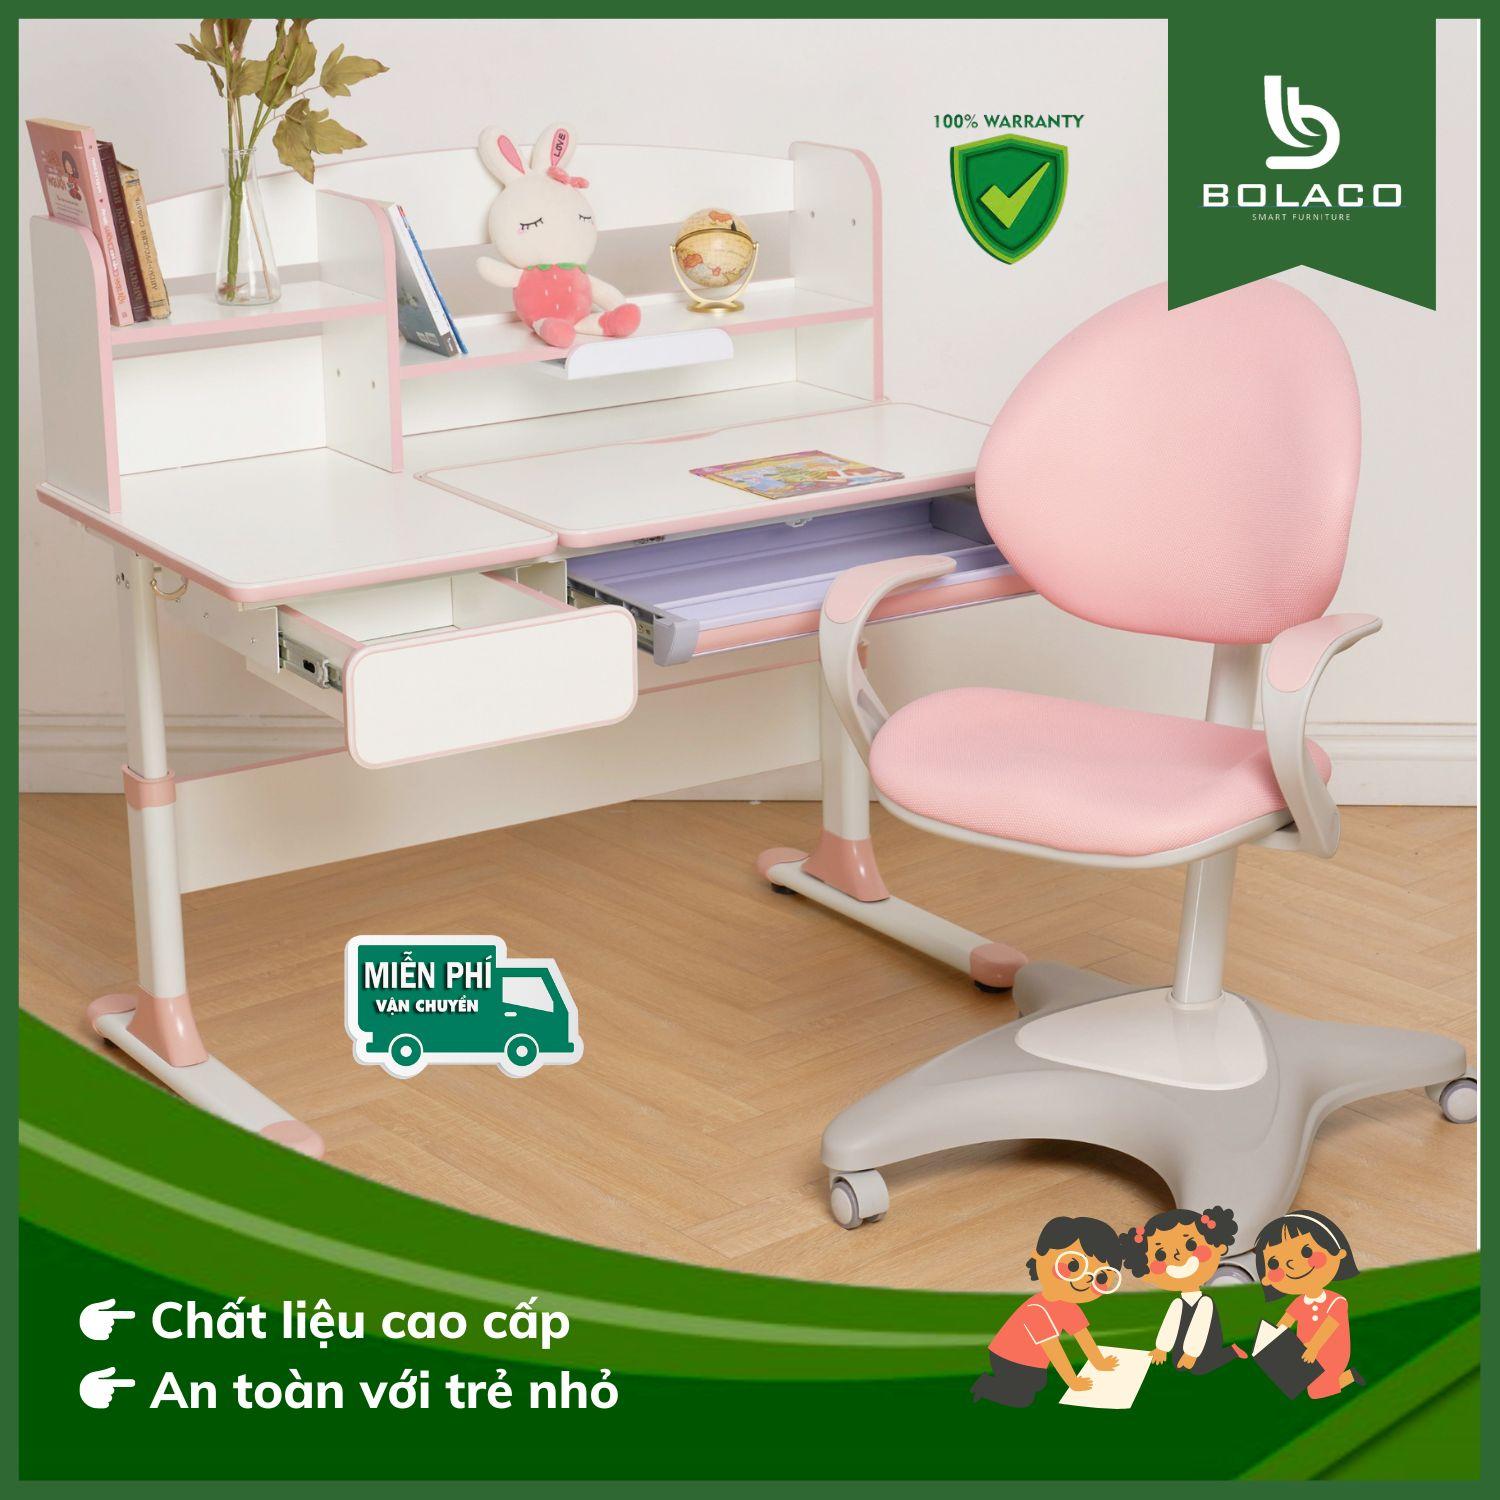 Bolaco - Địa chỉ cung cấp bàn học thông minh và ghế chống gù chất lượng cao - 1